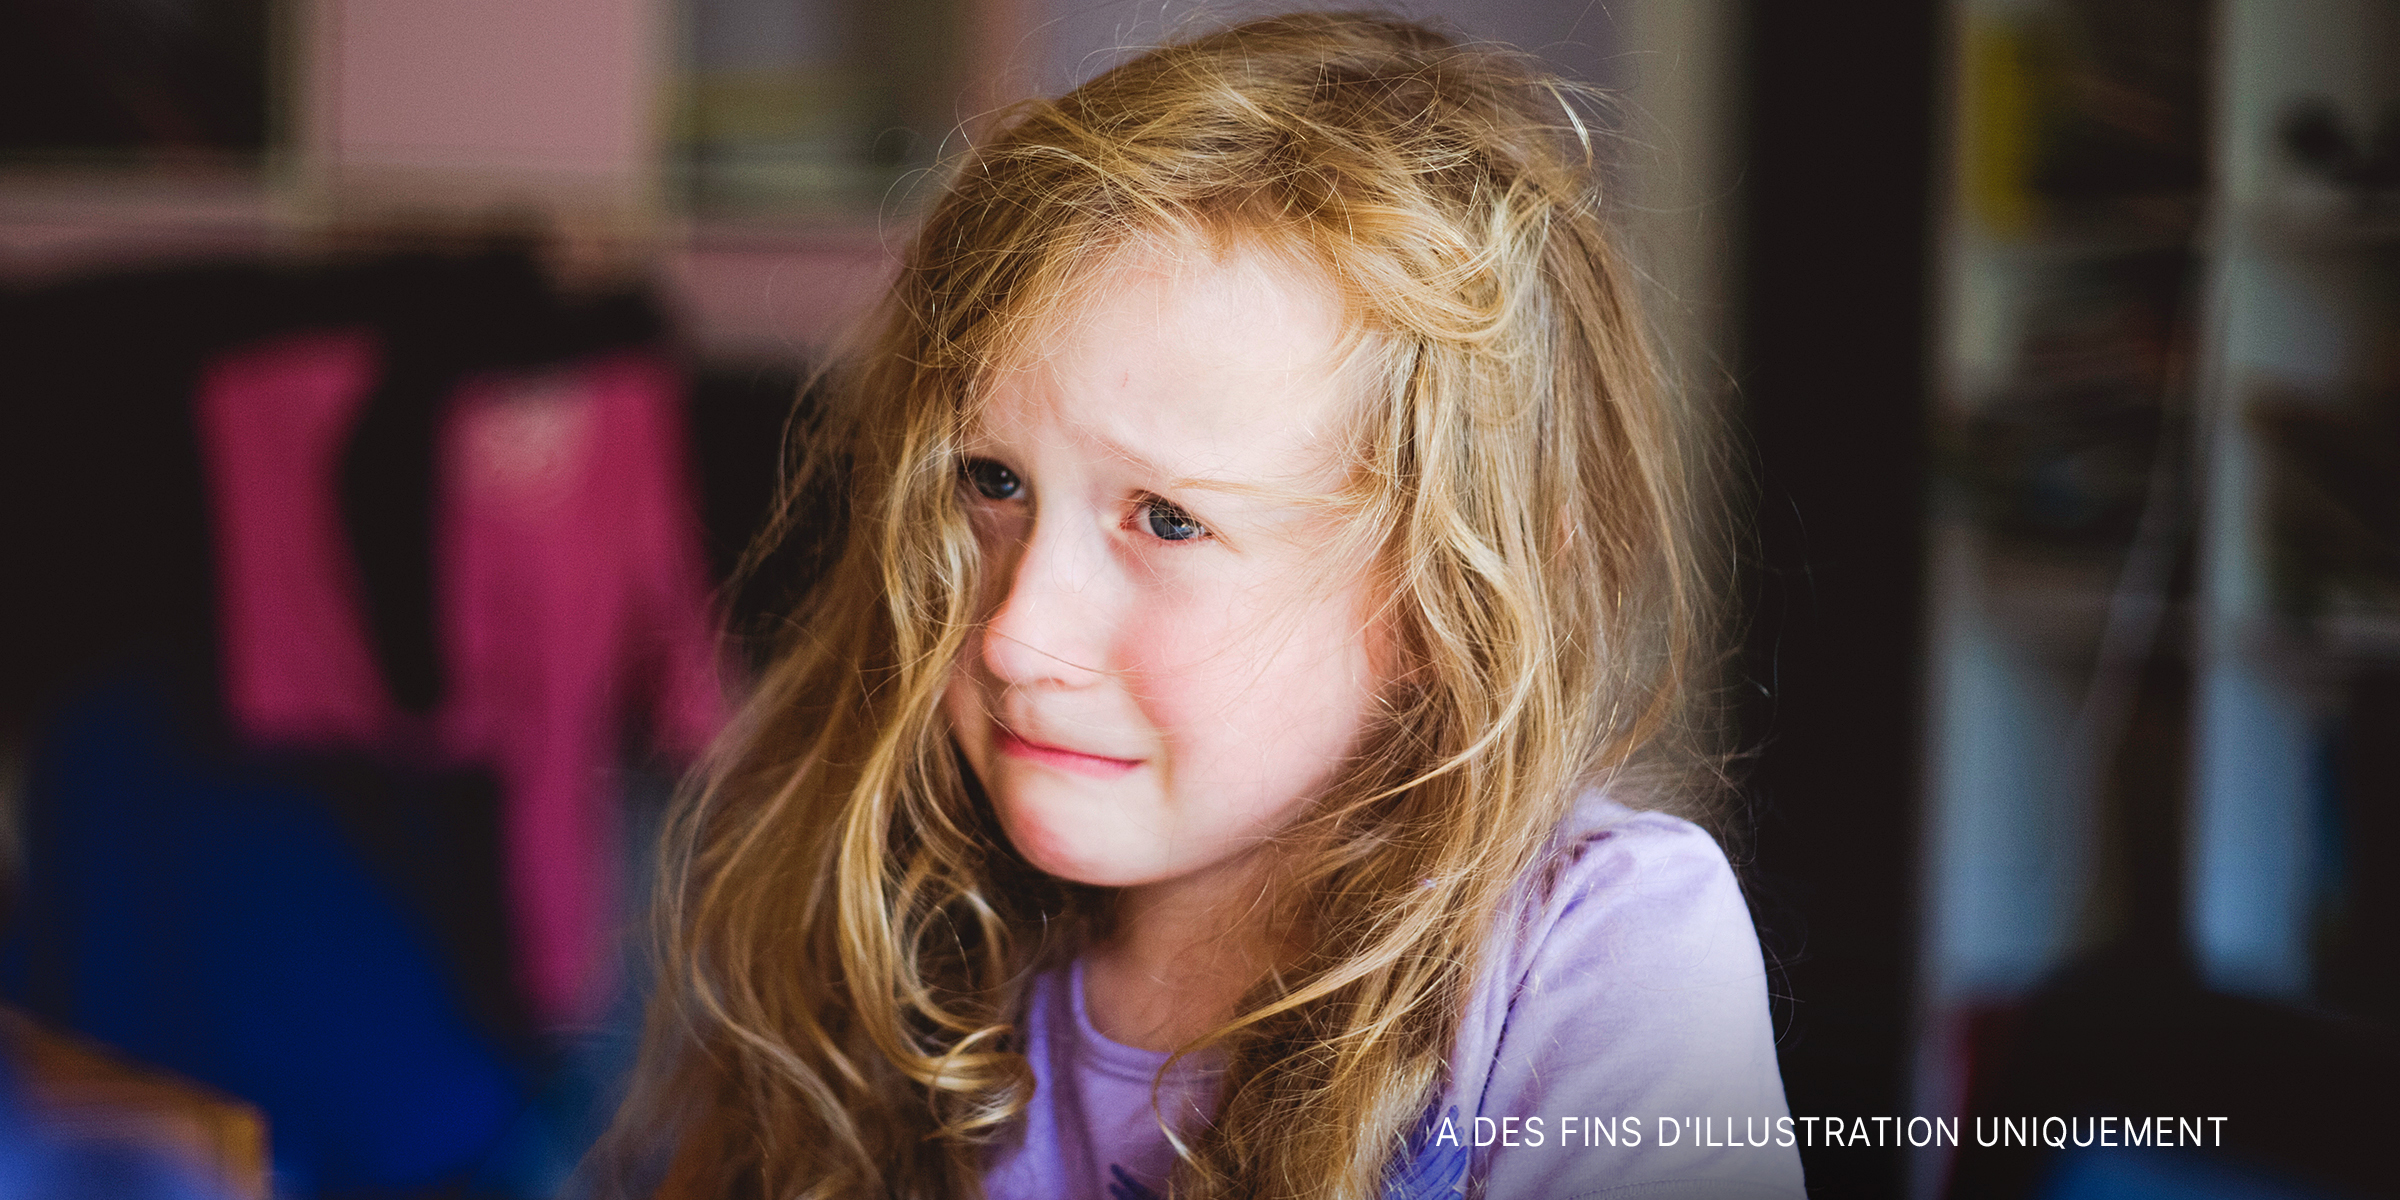 Une petite fille en train de pleurer | Source : Getty Images